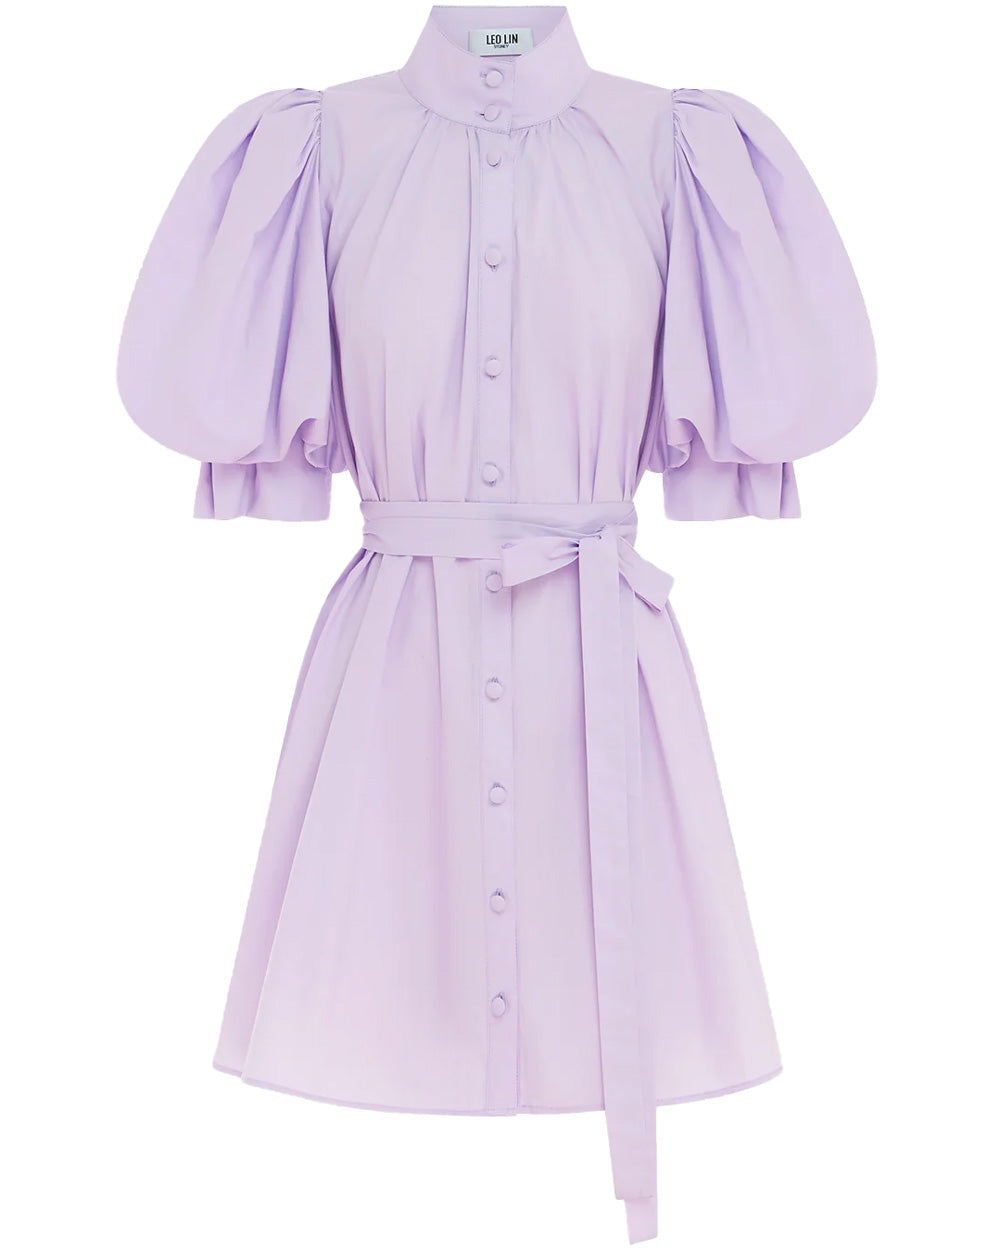 Lilac Eli Mini Dress